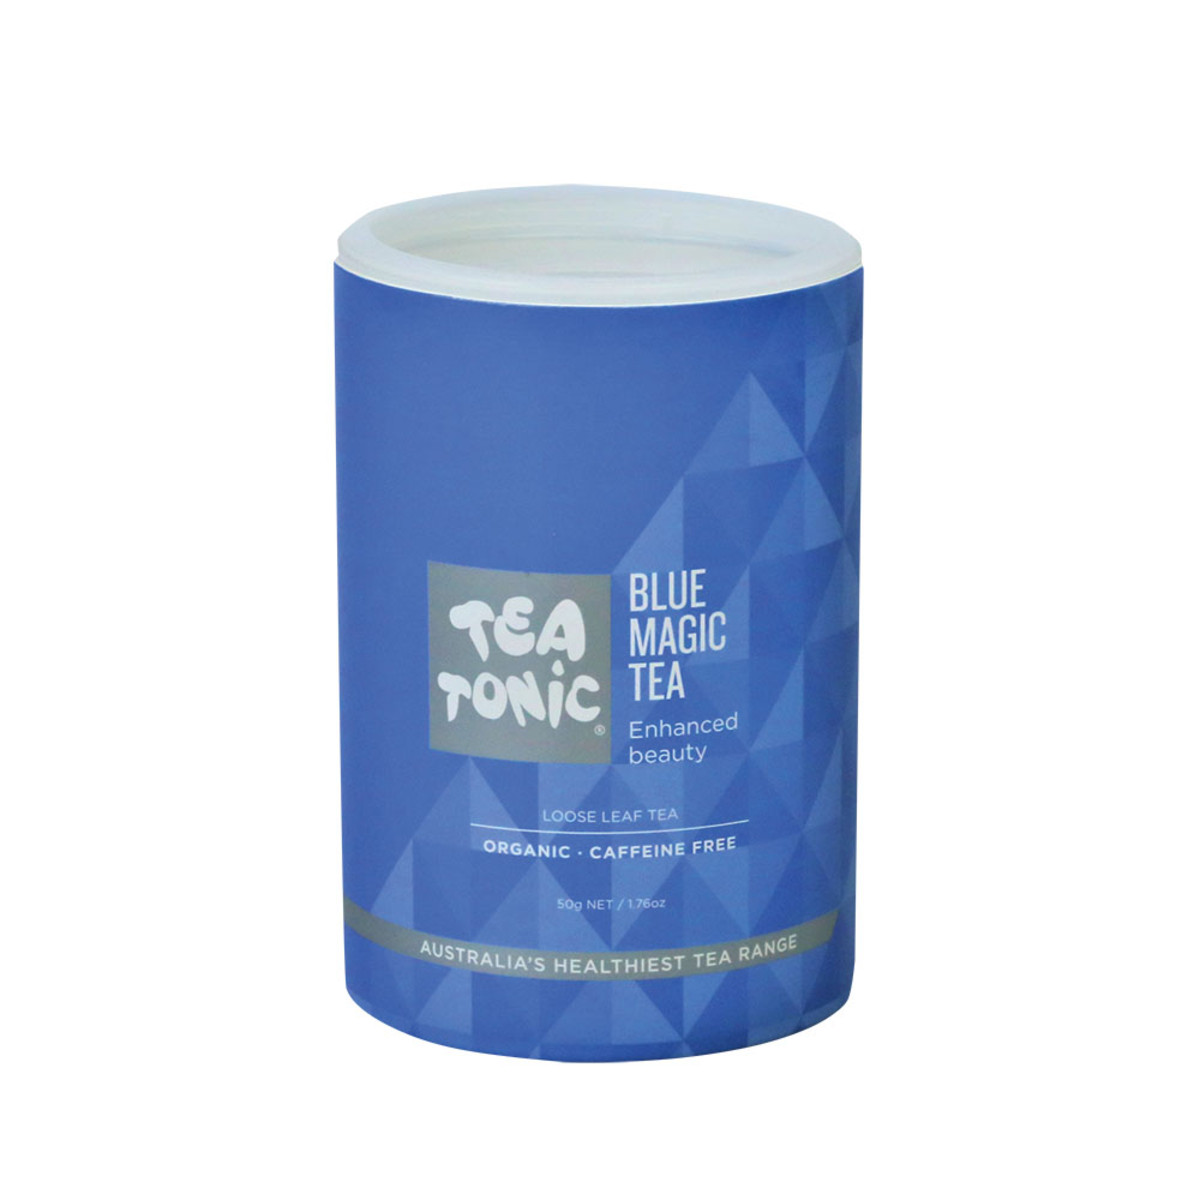 TEA TONIC - Blue Magic Loose Leaf